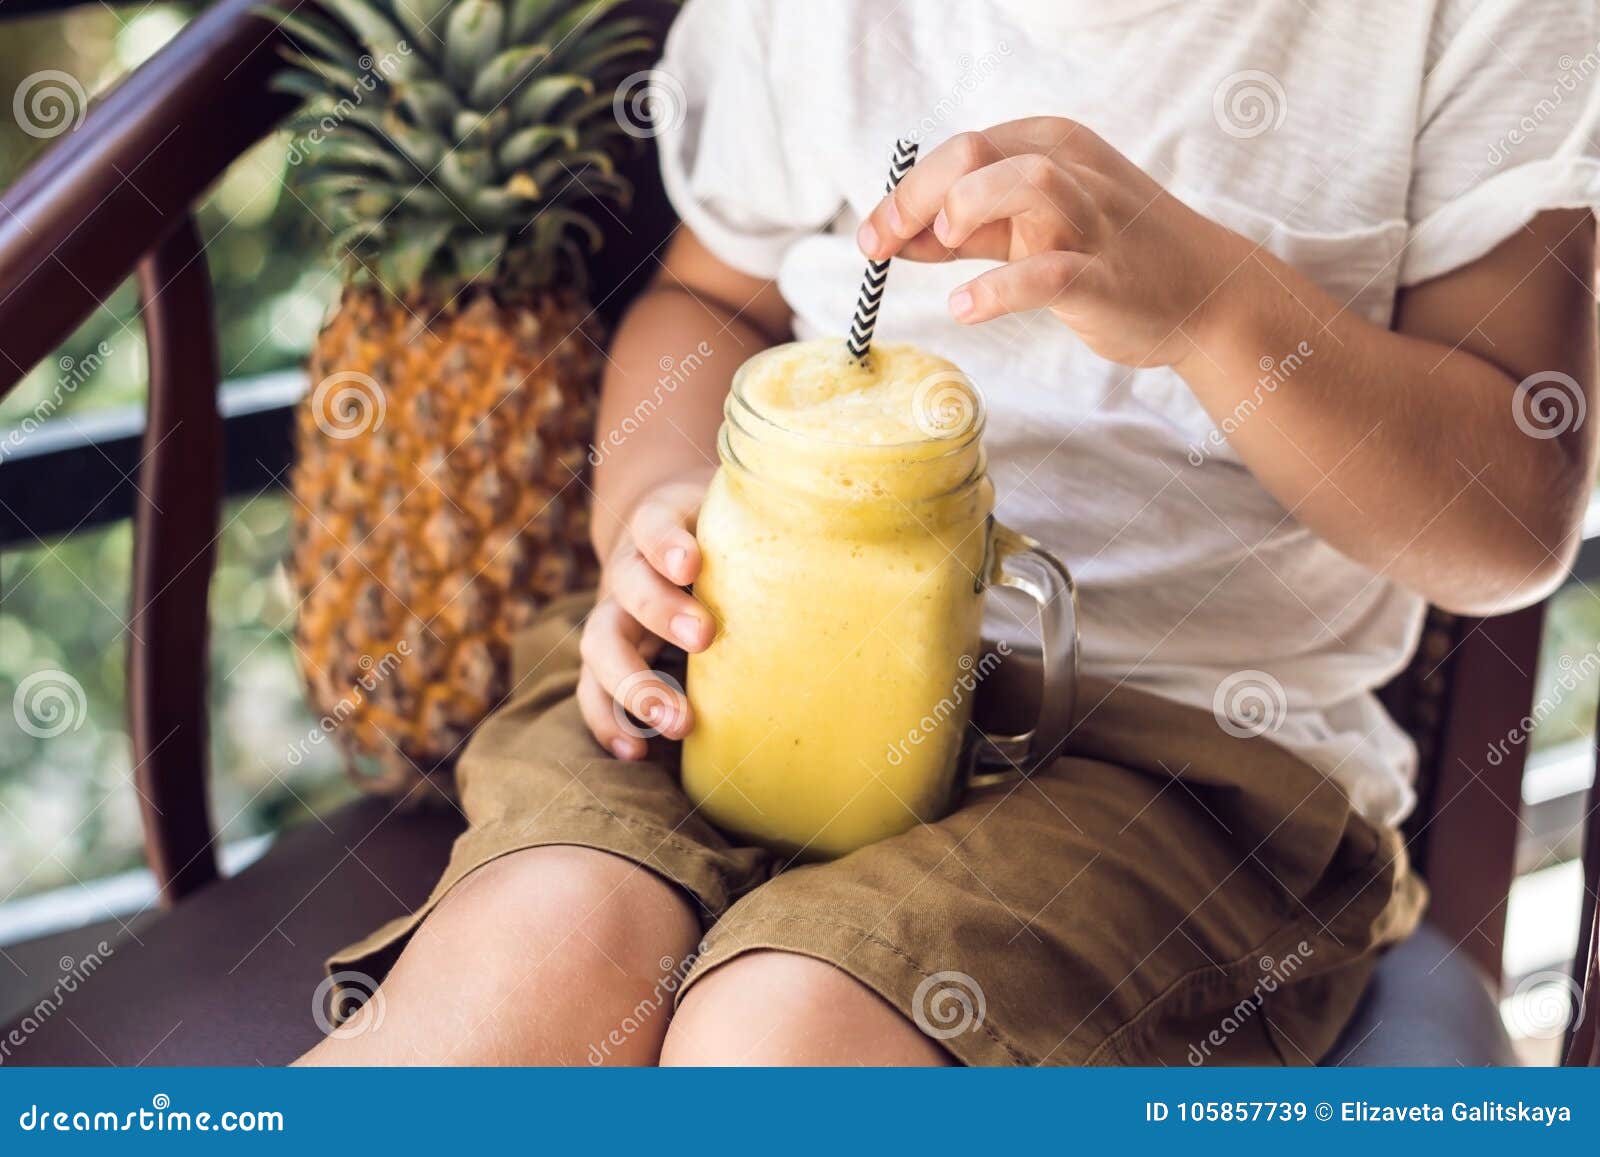 Для чего мужчины пьют ананасовый. Пацаны и ананасовый сок. Ананасовый сок в руке фото. Смузи на веранде с девушками фото. Мужчина пьет ананасовый сок.